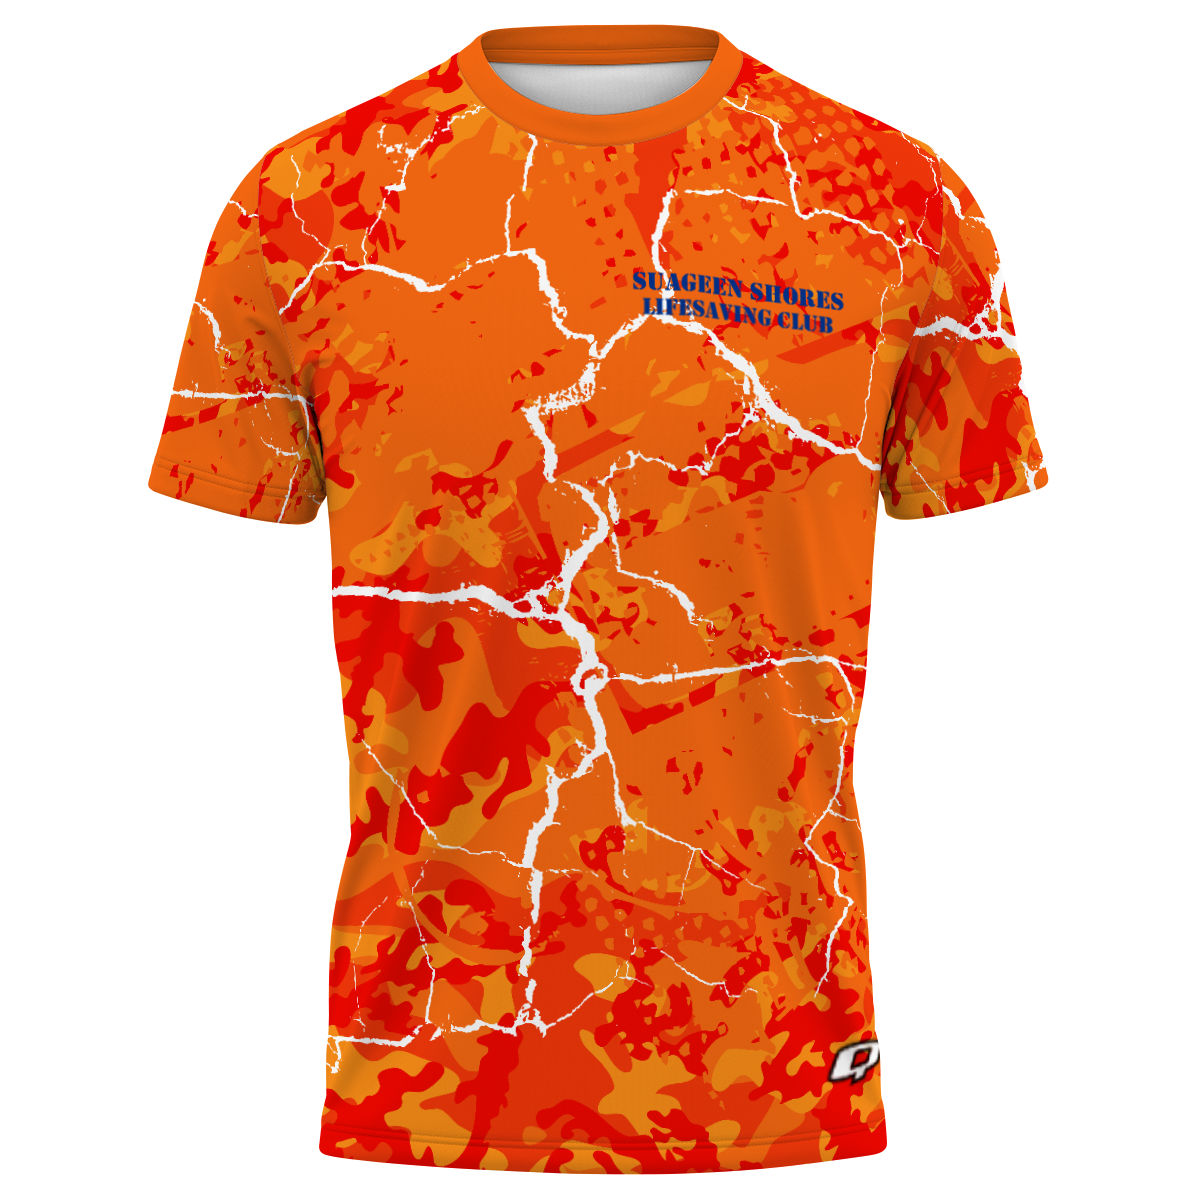 Saugeen Shores - 3 - Men's Performance Shirt